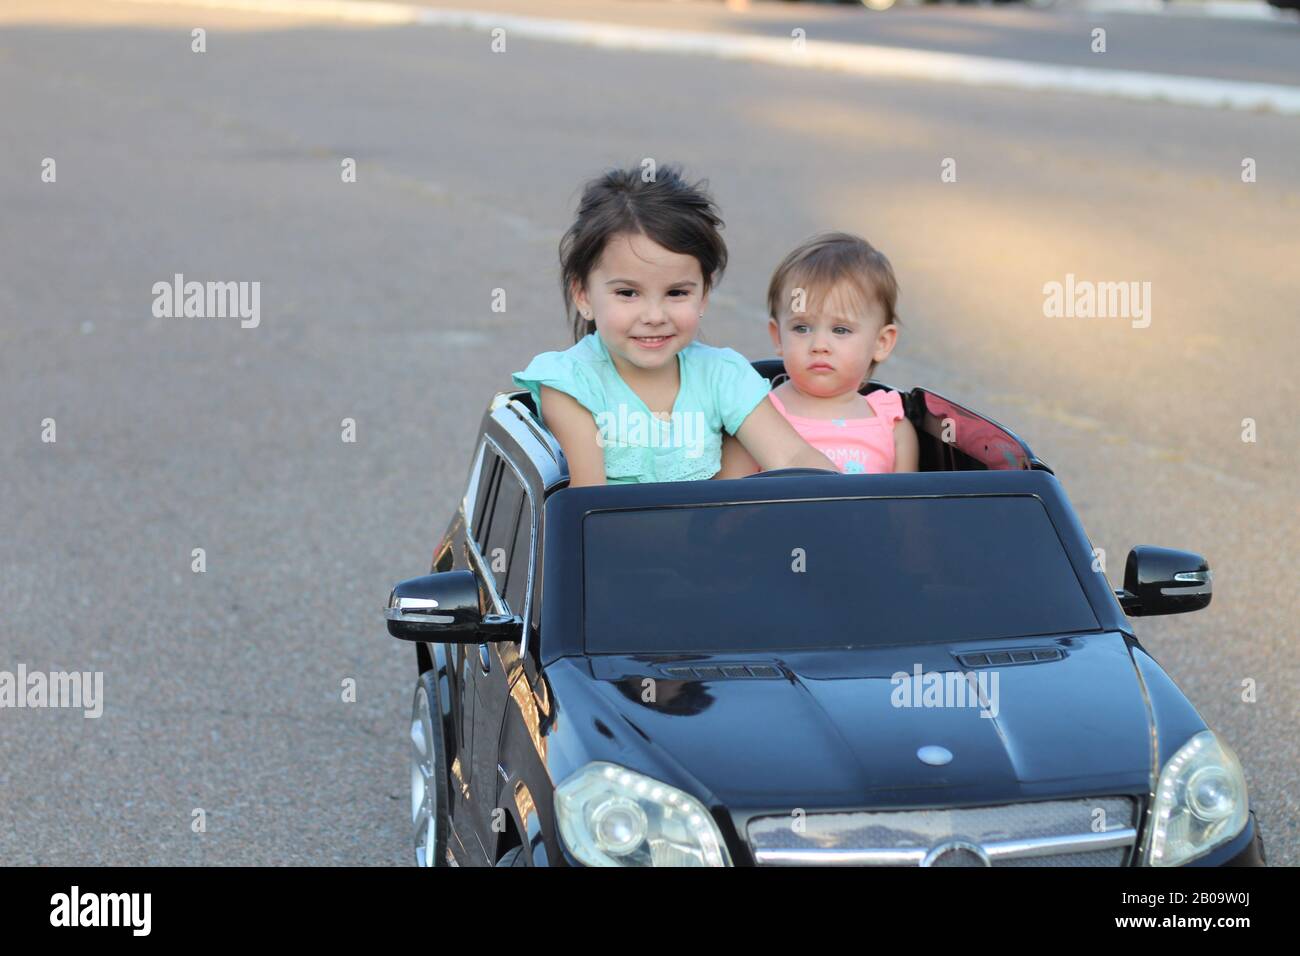 Dos increíbles chicas viajan en un gran coche de juguete sobre asfalto urbano. Conducción al aire libre en una atracción de verano para niños Foto de stock